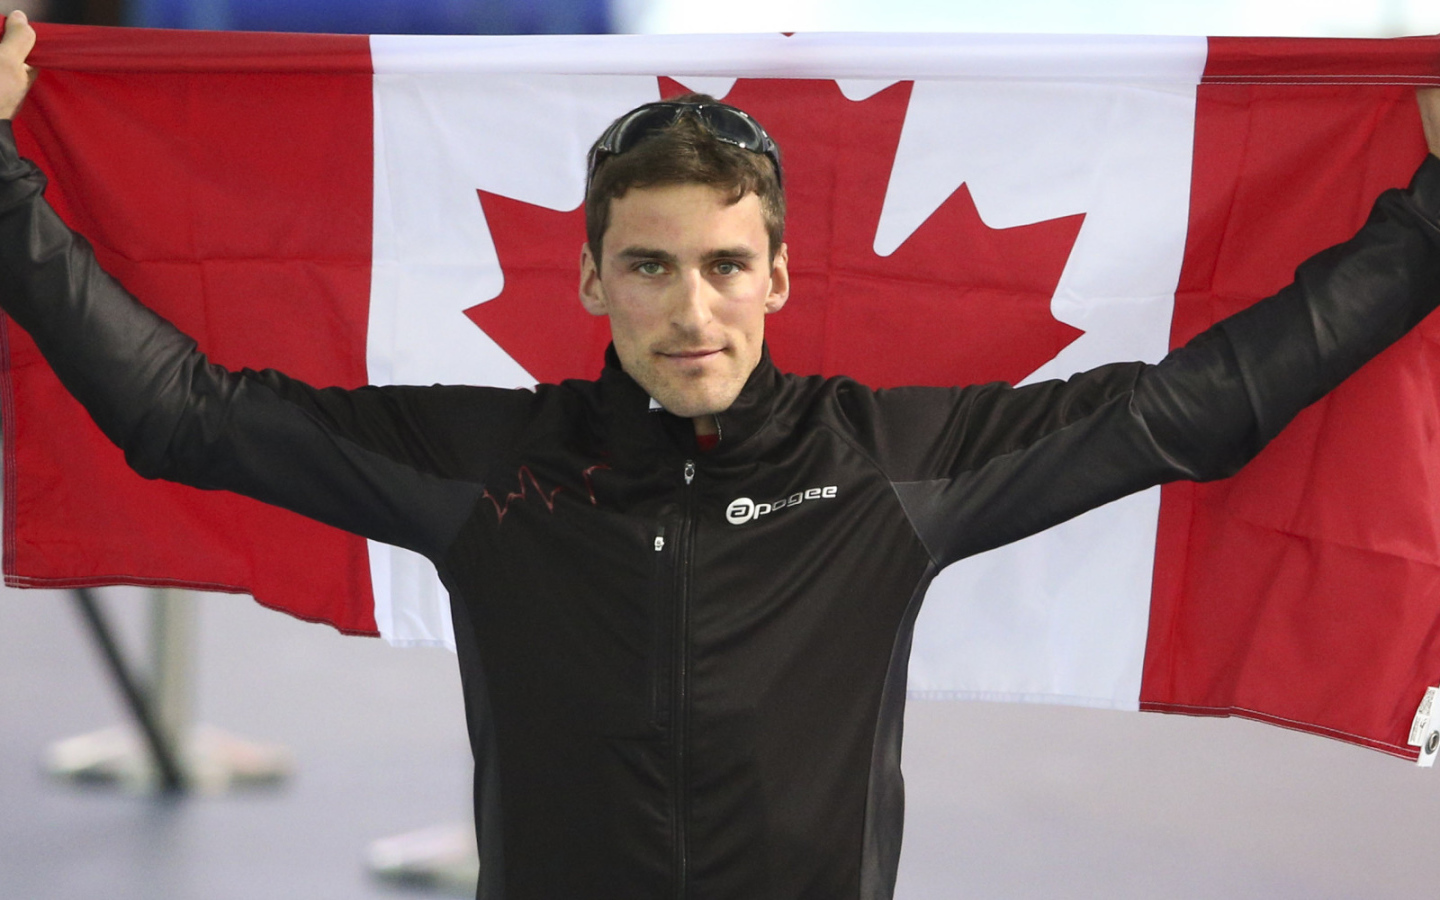 Обладатель серебряной и бронзовой медали в дисциплине скоростной бег на коньках Денни Моррисон на олимпиаде в Сочи